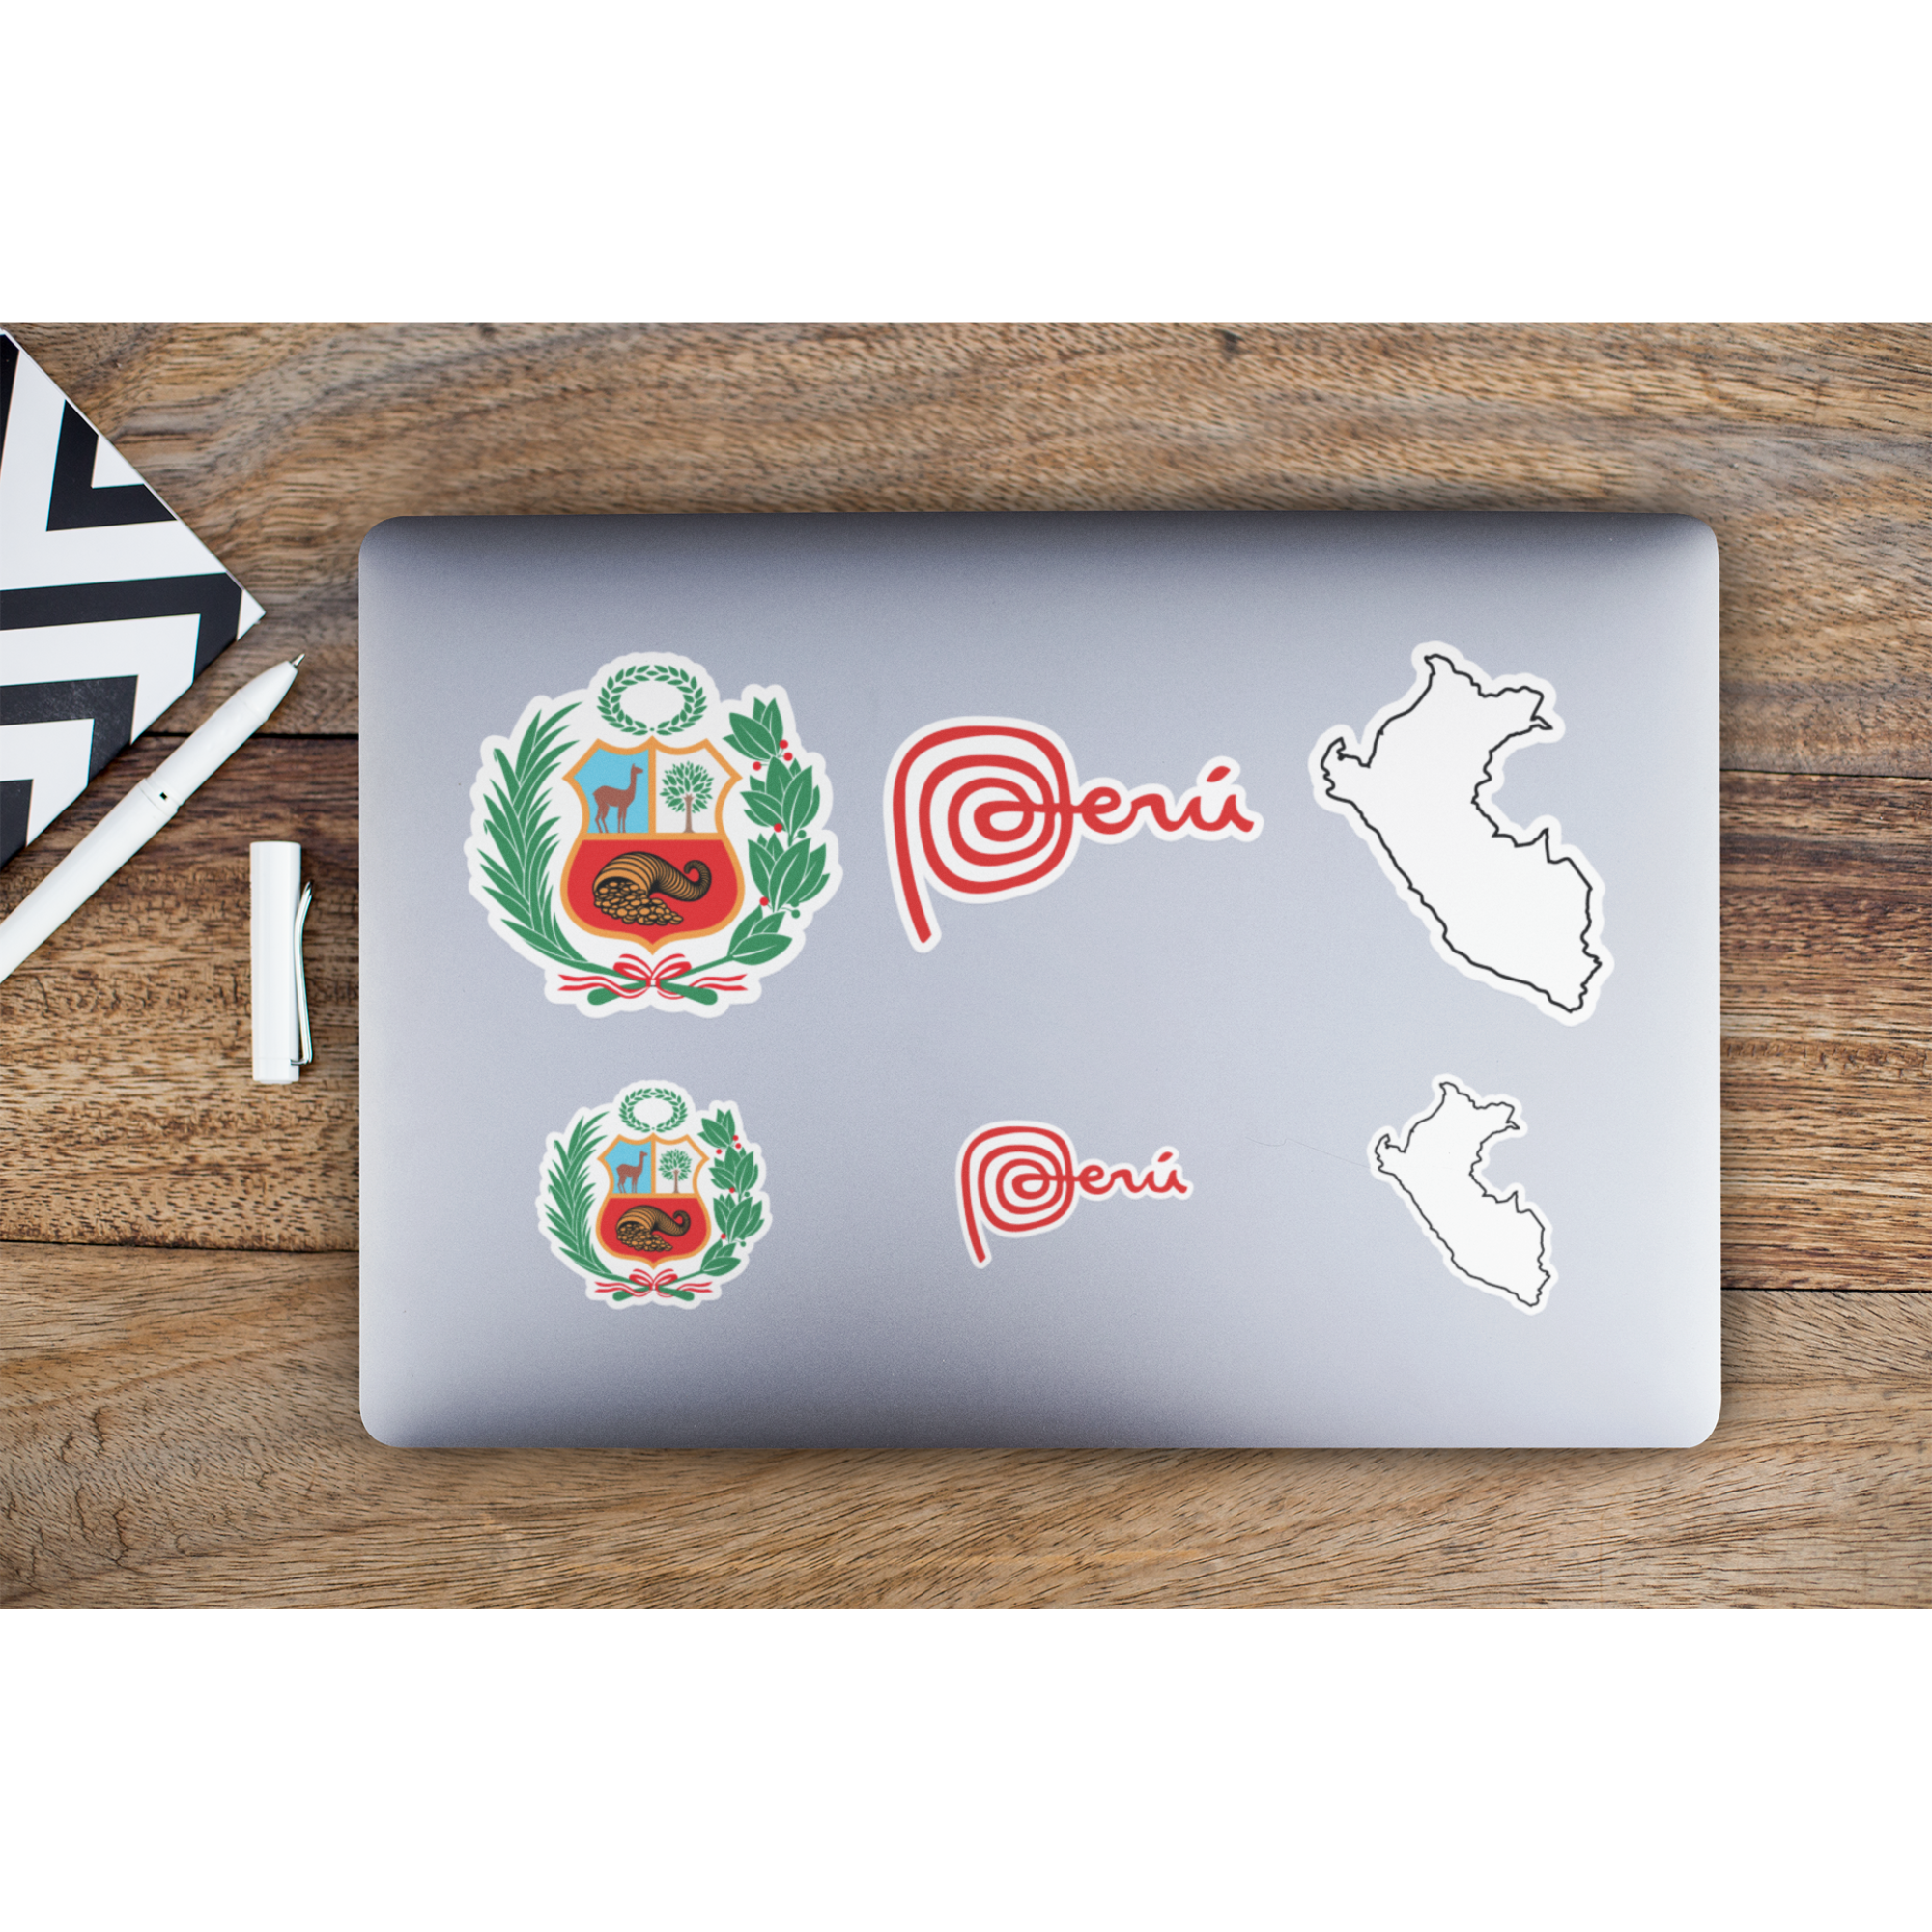 Peru Stickers | Escudo, Marca Peru, Map | 6 Pack on Laptop